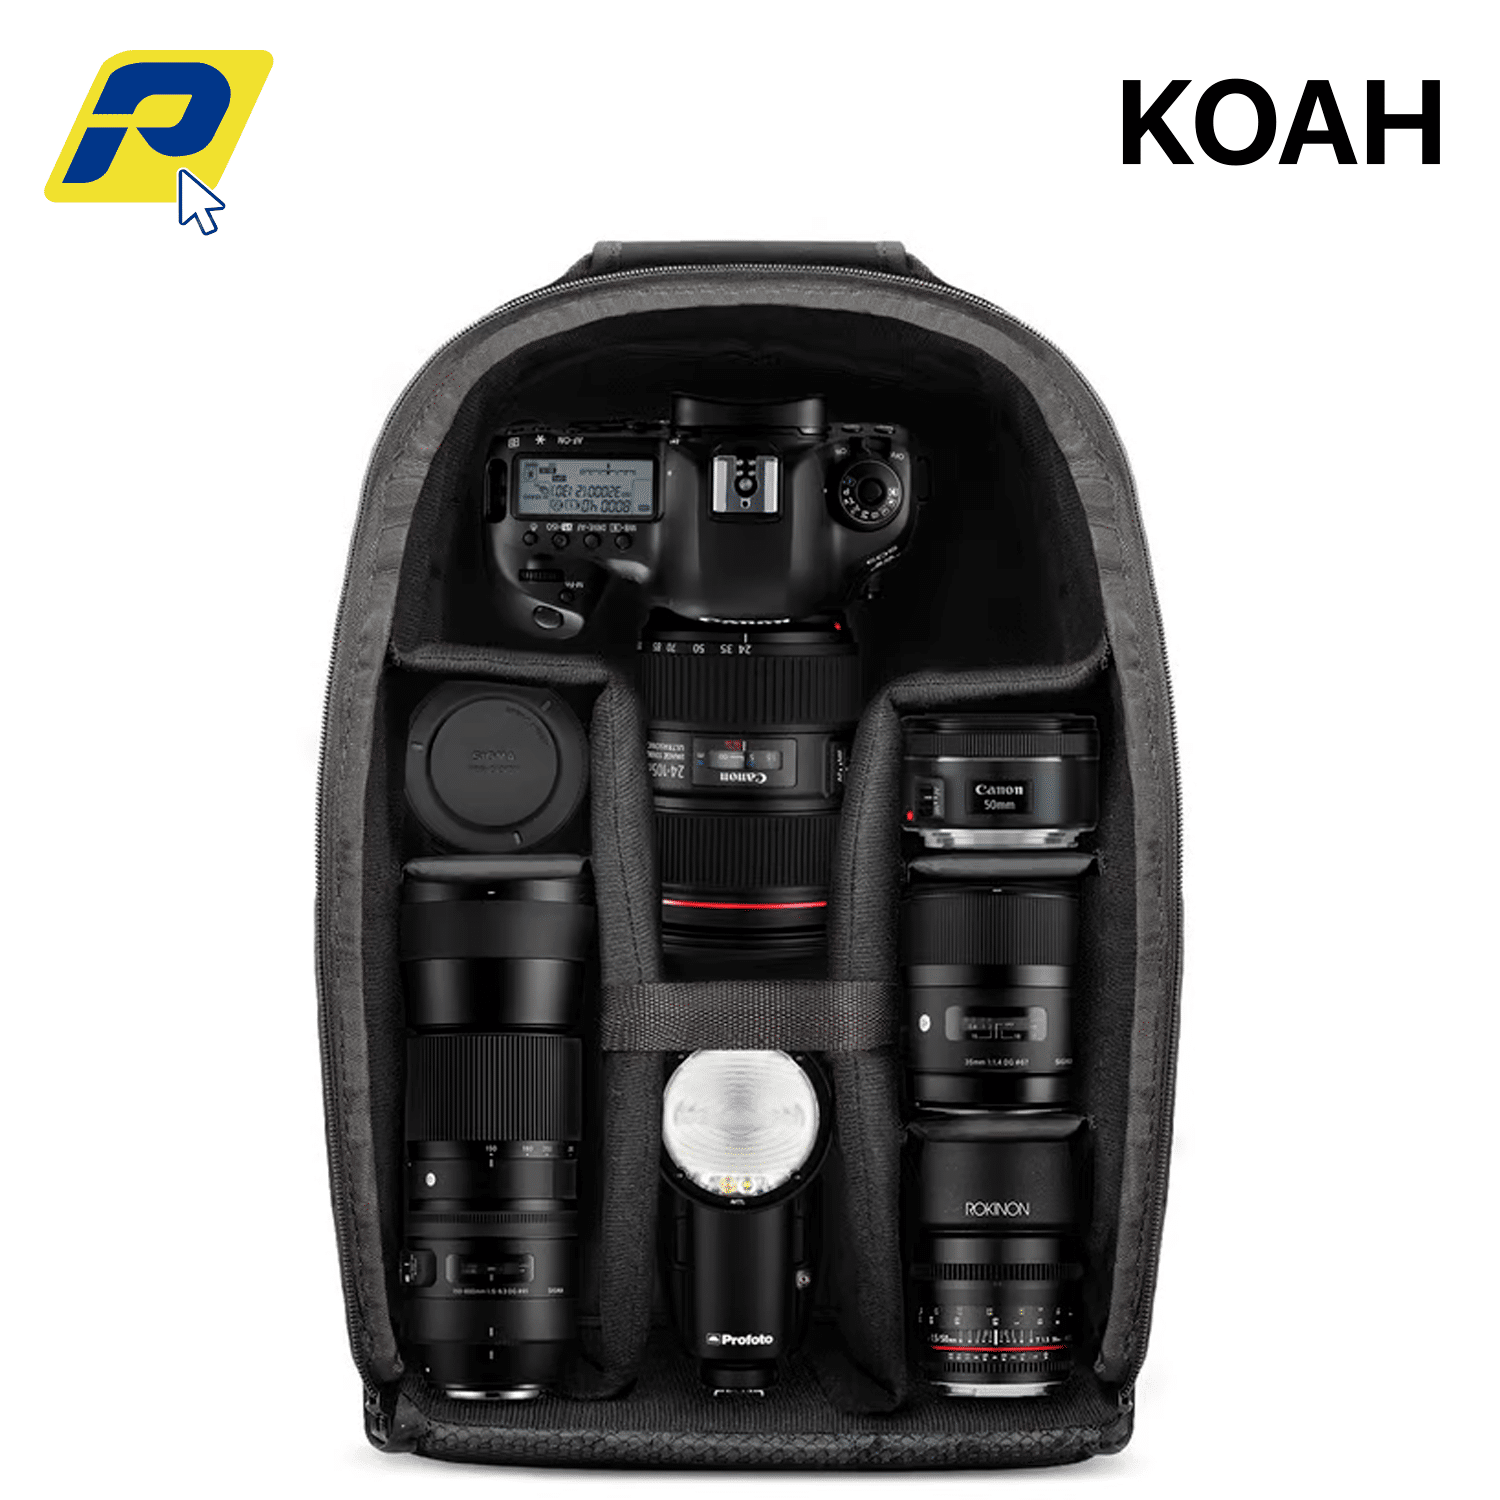 Koah Mochila para camara profesional maletin compatible con accesorios de camaras Sony Canon Nikon ML 3